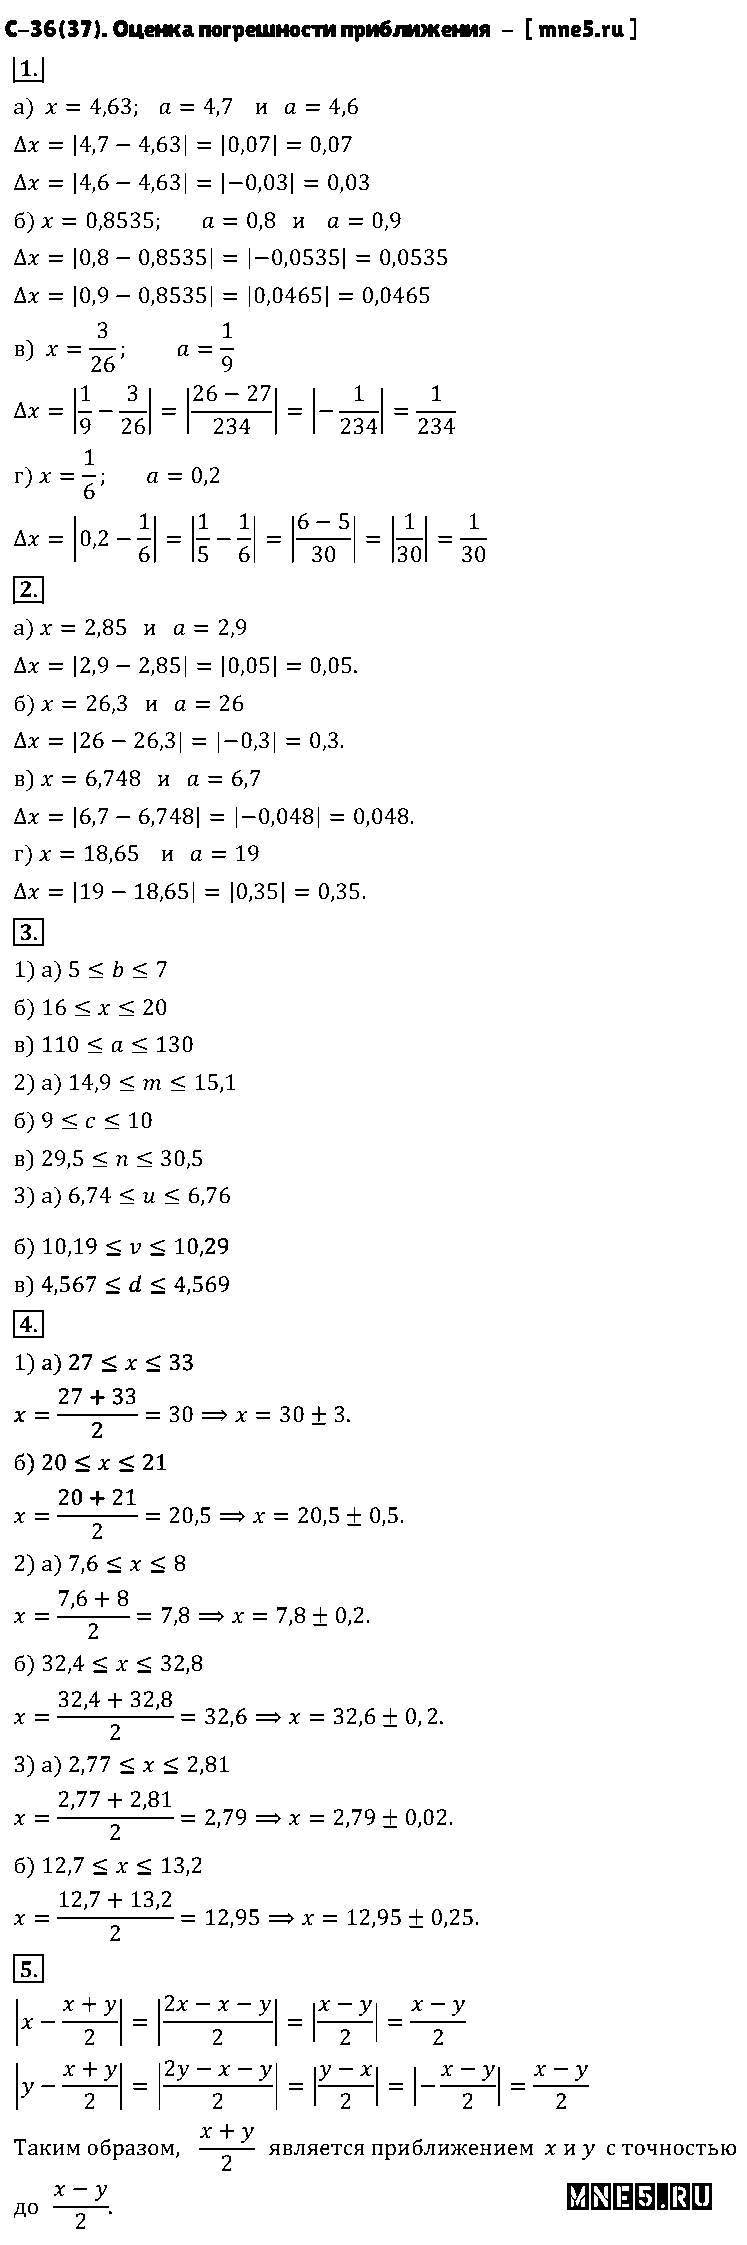 ГДЗ Алгебра 8 класс - С-36(37). Оценка погрешности приближения